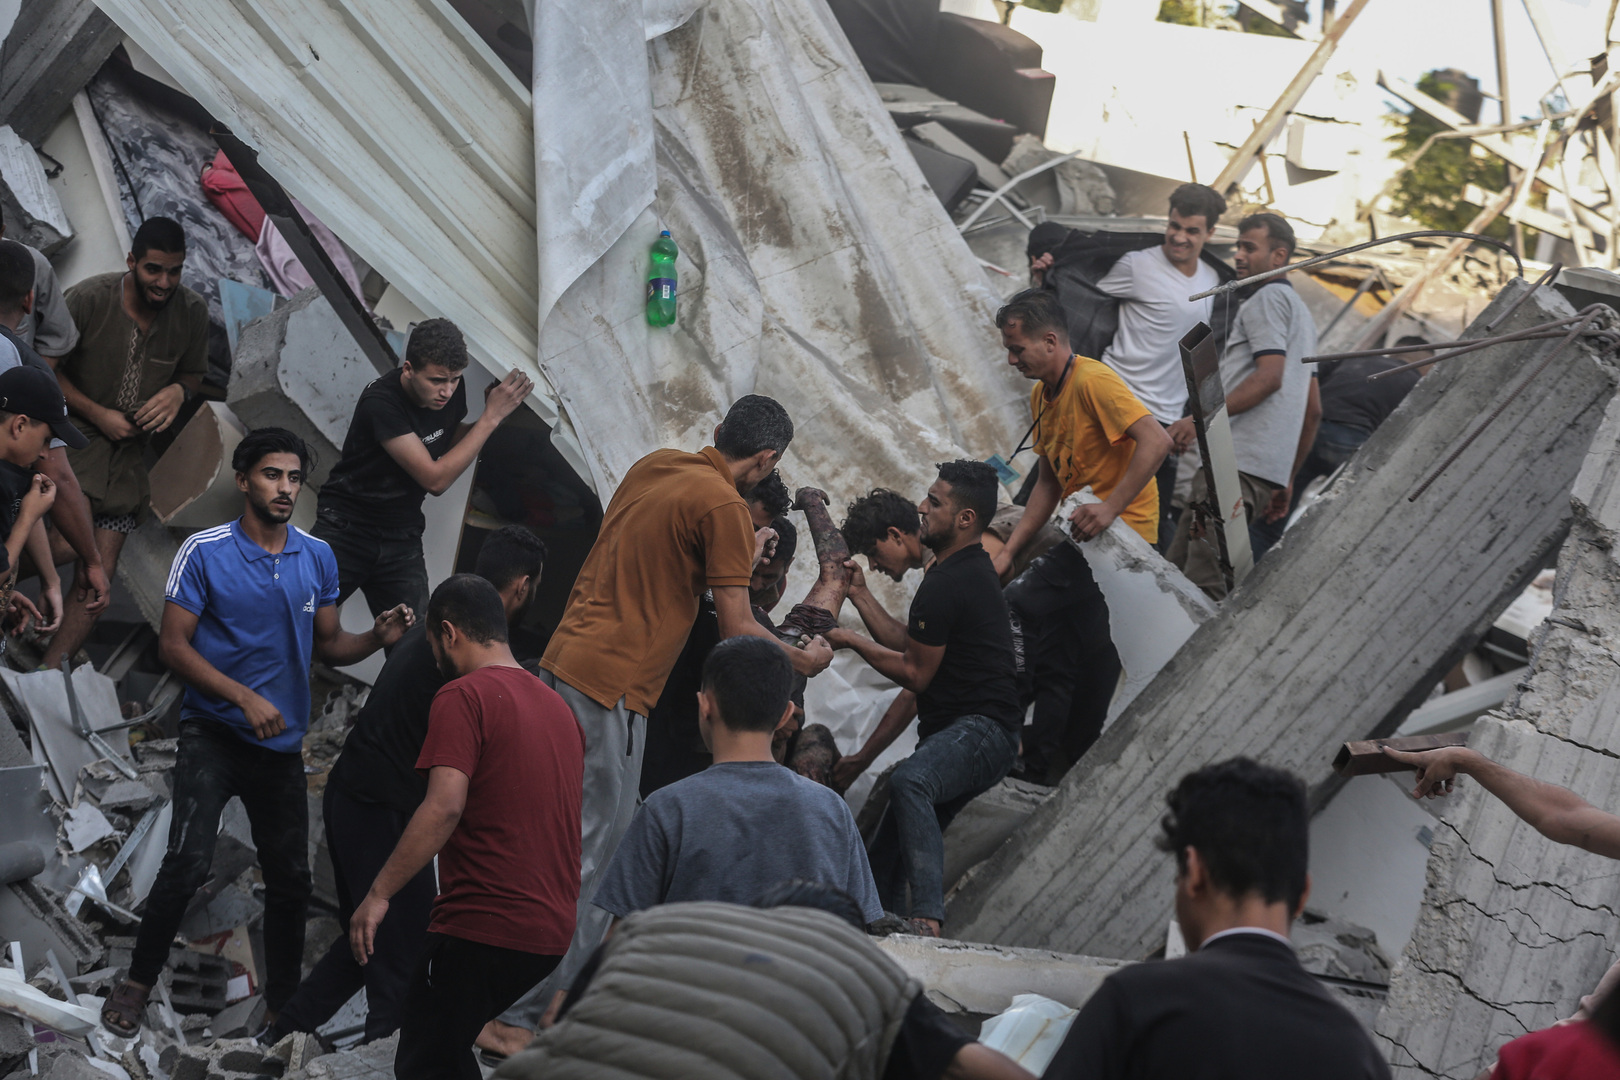 المكتب الإعلامي الحكومي في غزة يصدر بيانا حول الإحصاءات الإنسانية المخيفة في القطاع